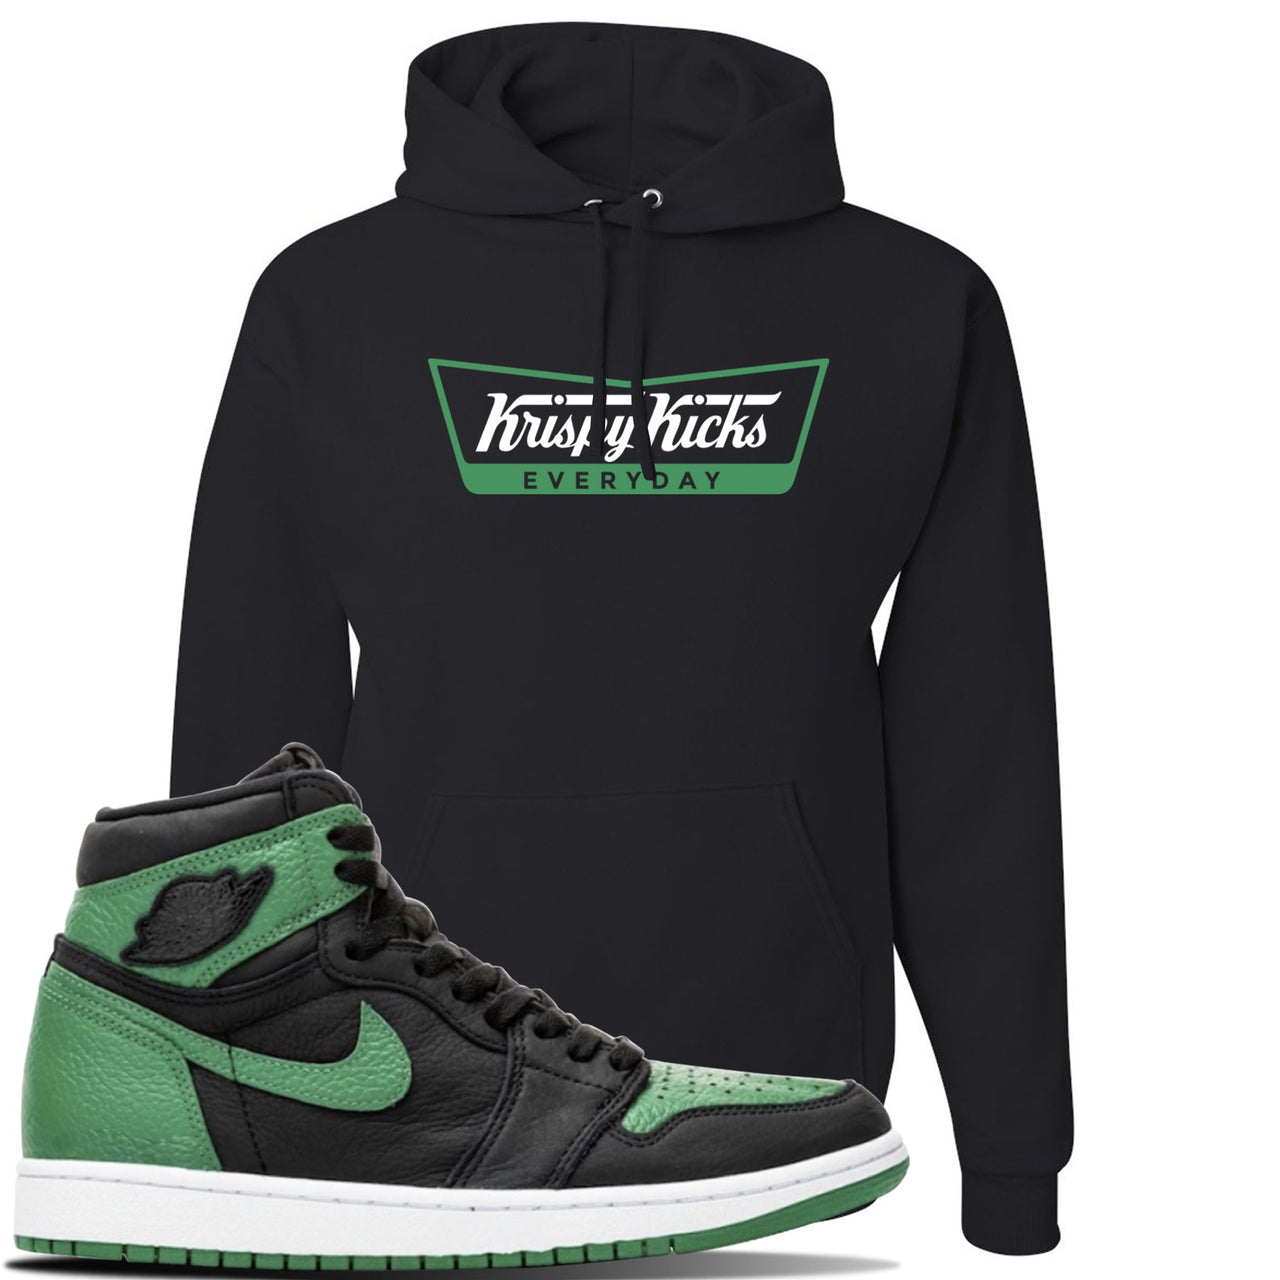 Jordan 1 Retro High OG Pine Green Gym Sneaker Black Pullover Hoodie | Hoodie to match Air Jordan 1 Retro High OG Pine Green Gym Shoes | Krispy Kicks